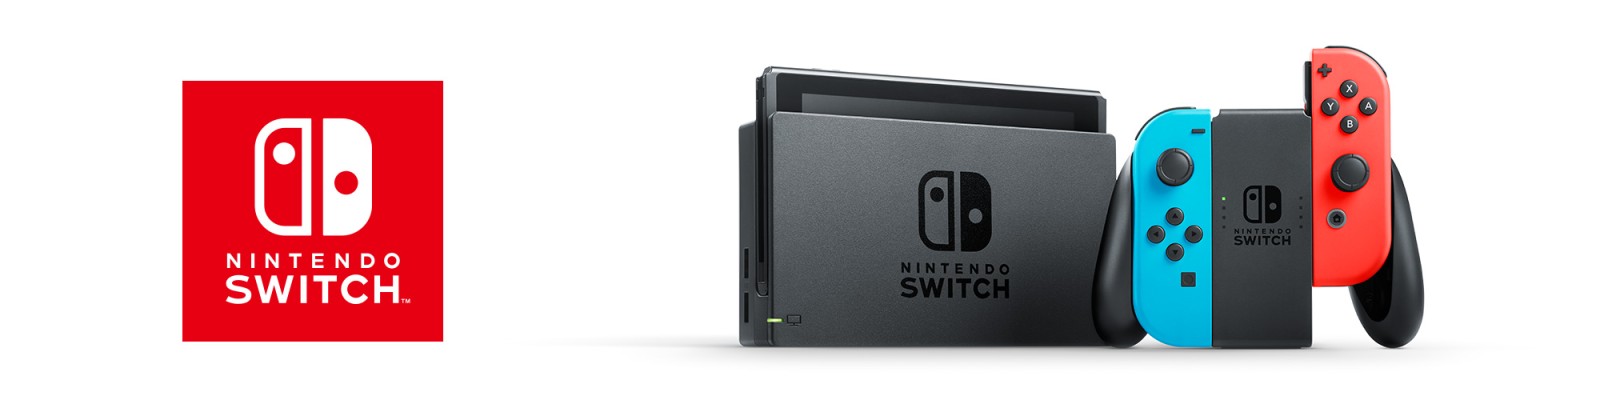 Servizio al consumatore per Nintendo Switch